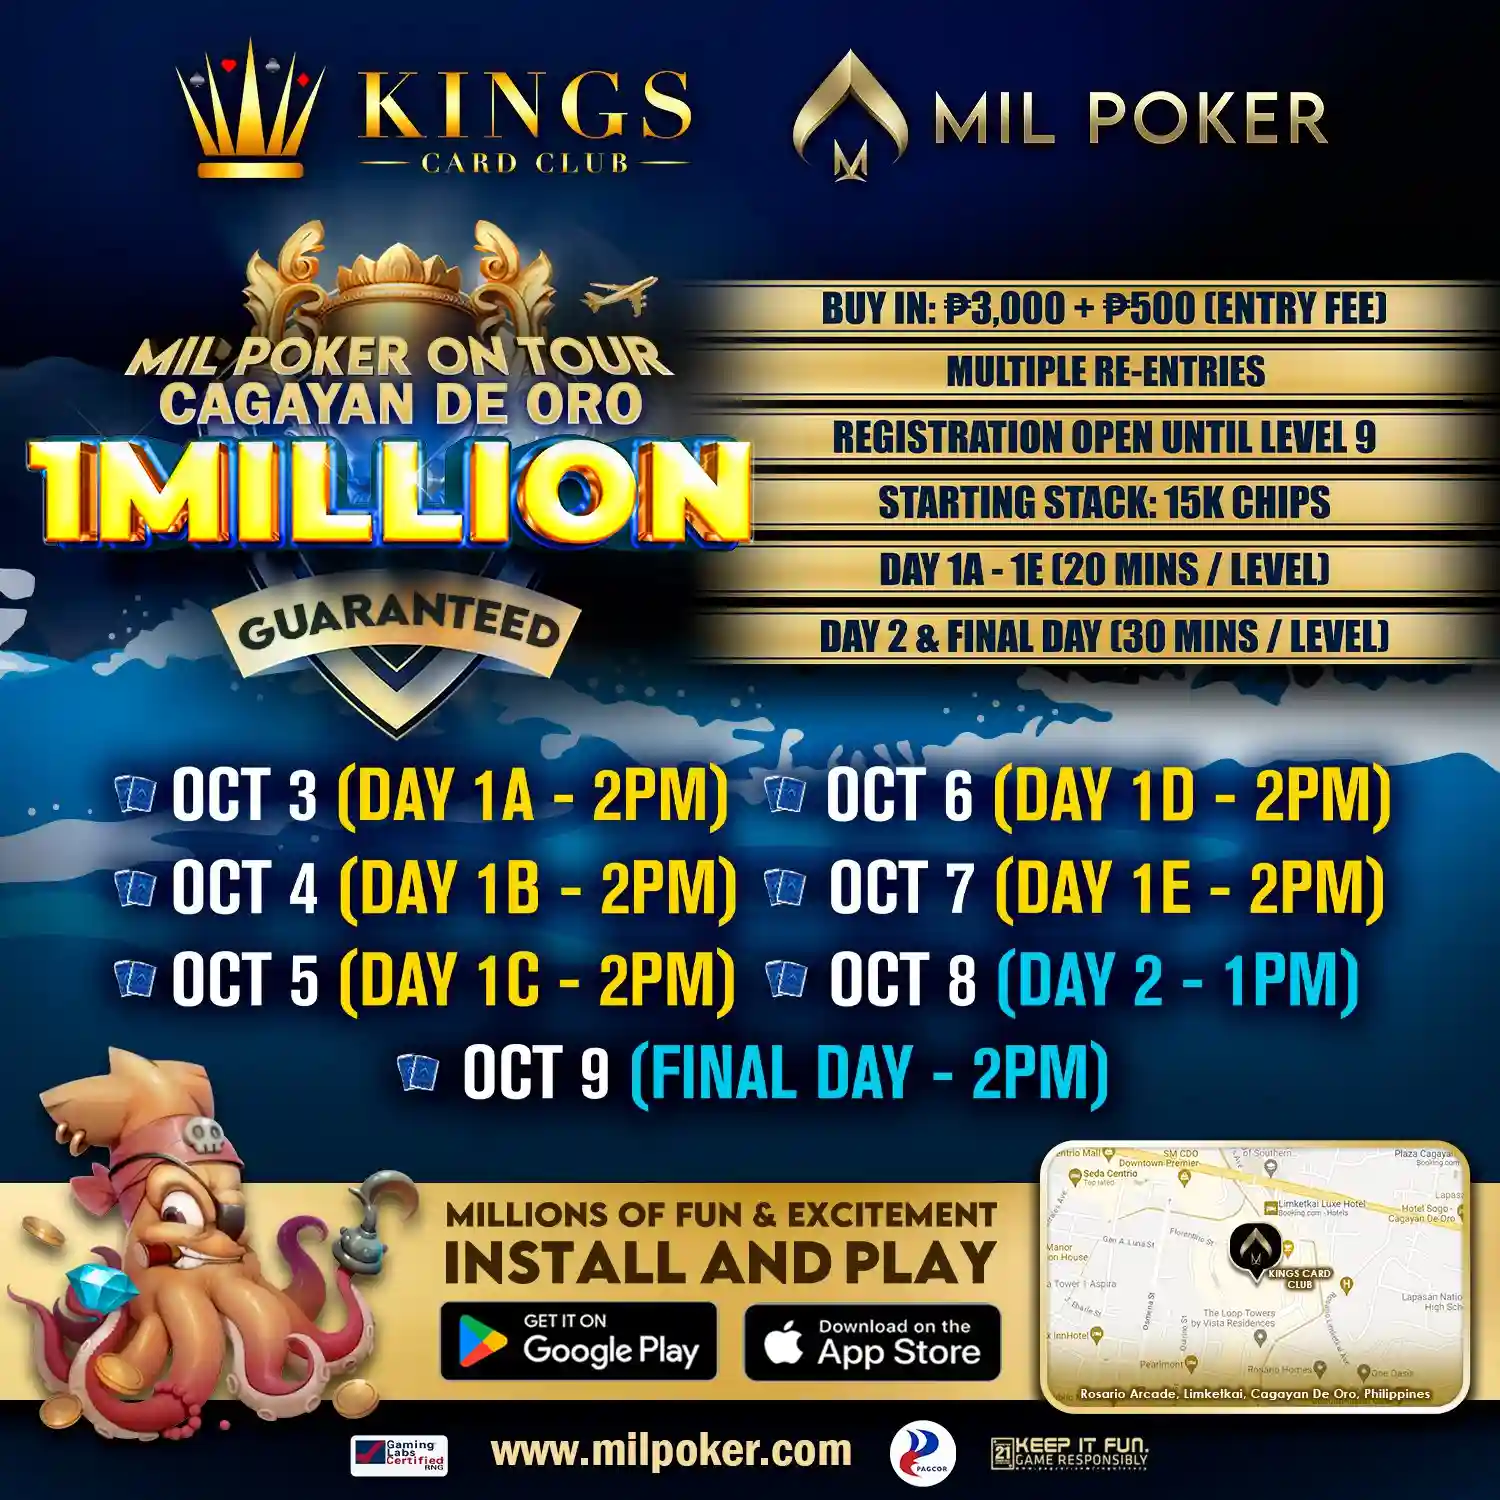 Kings Card Club Mil Poker 巡迴賽：菲律賓卡加延德奧羅站—保證獎金 一百萬菲律賓披索